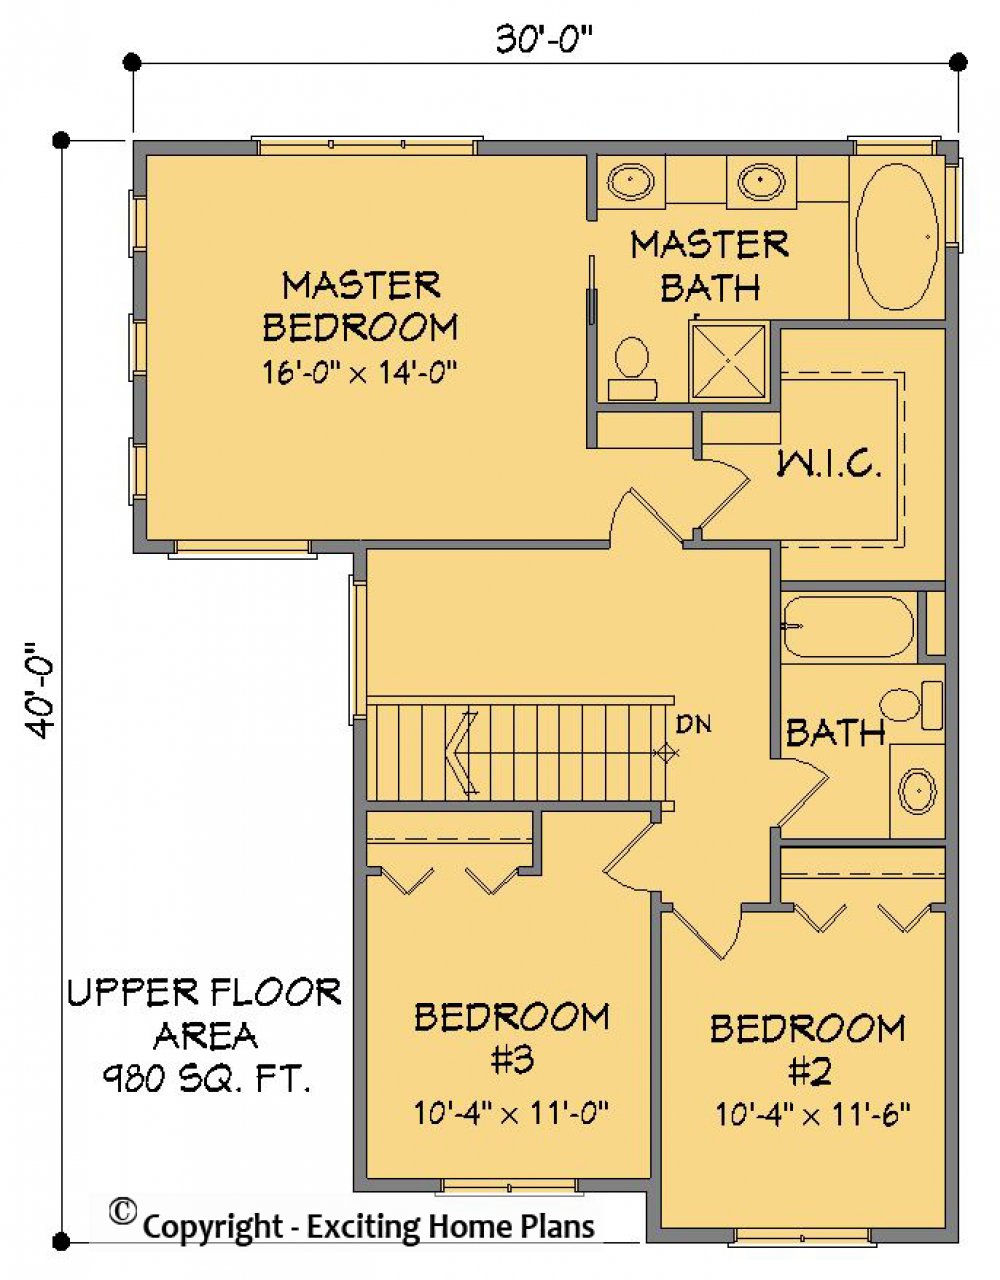 House Plan E1369-10 Upper Floor Plan